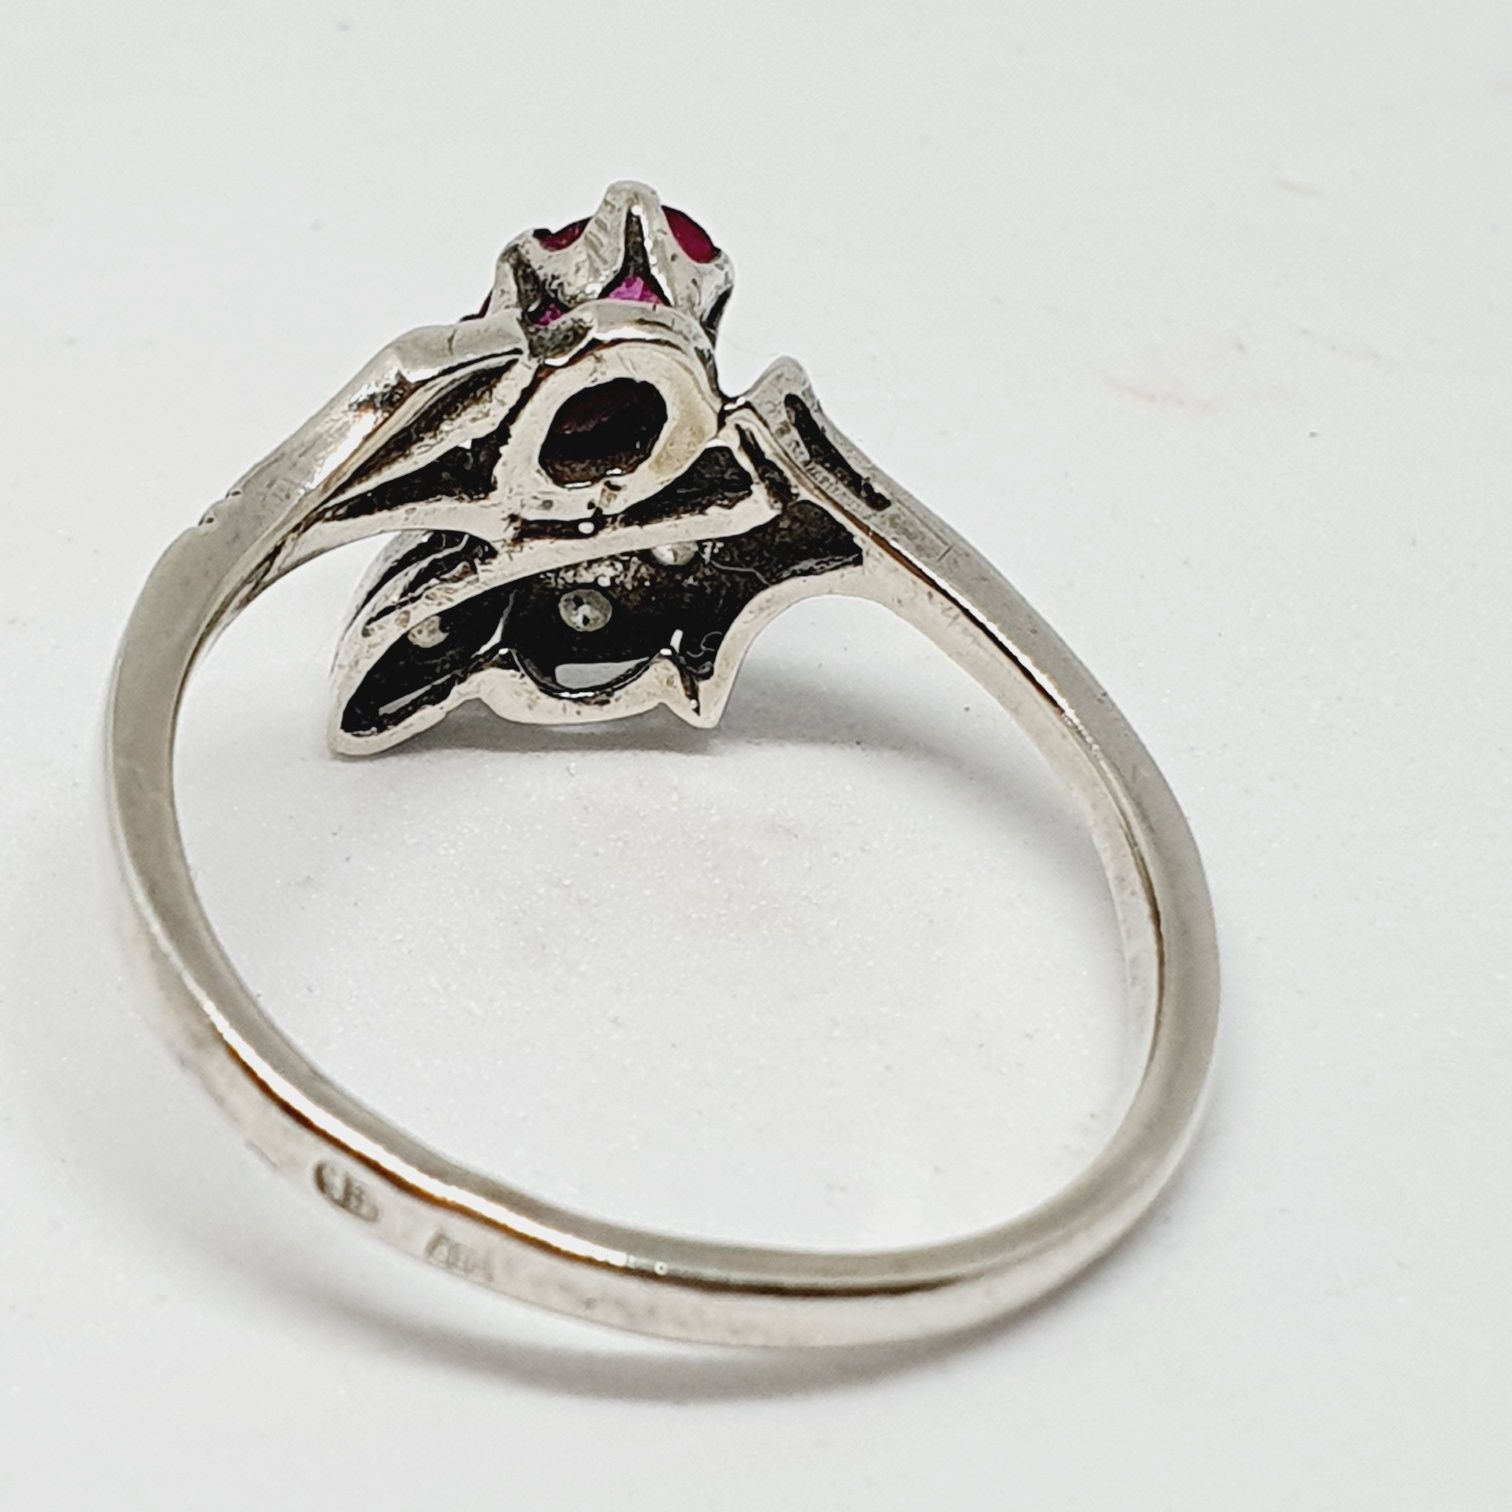 Radziecki pierścionek srebrny z rubinkiem